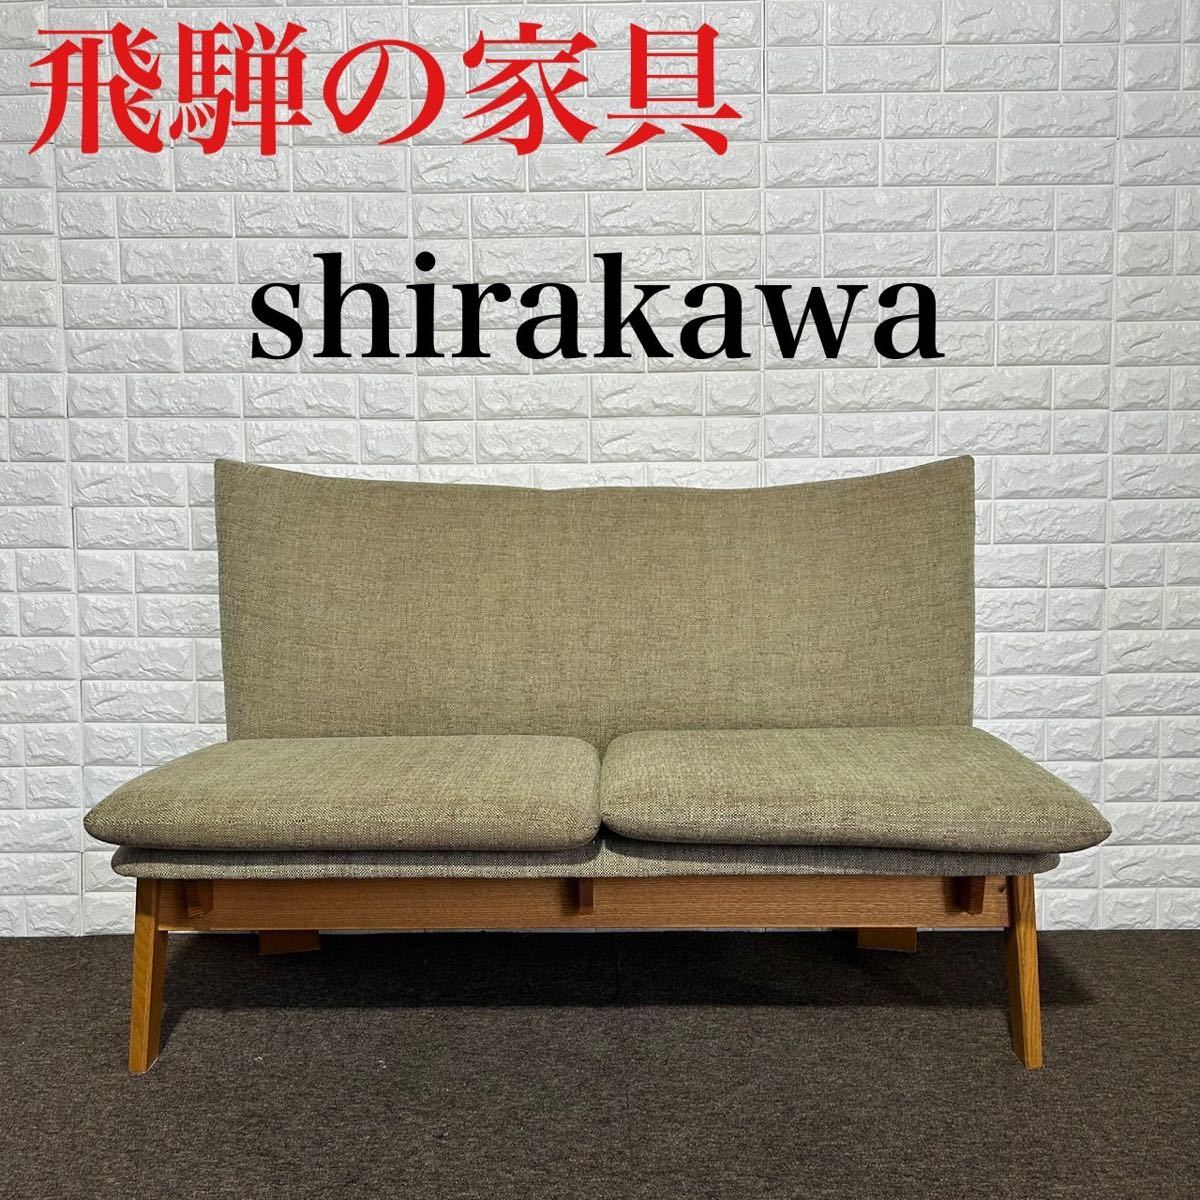 新作人気モデル Shirakawa シラカワ shirakawa 飛騨の家具 SL-R2483 3人掛け シラカワ F260 -  mughalkitchen.co.nz